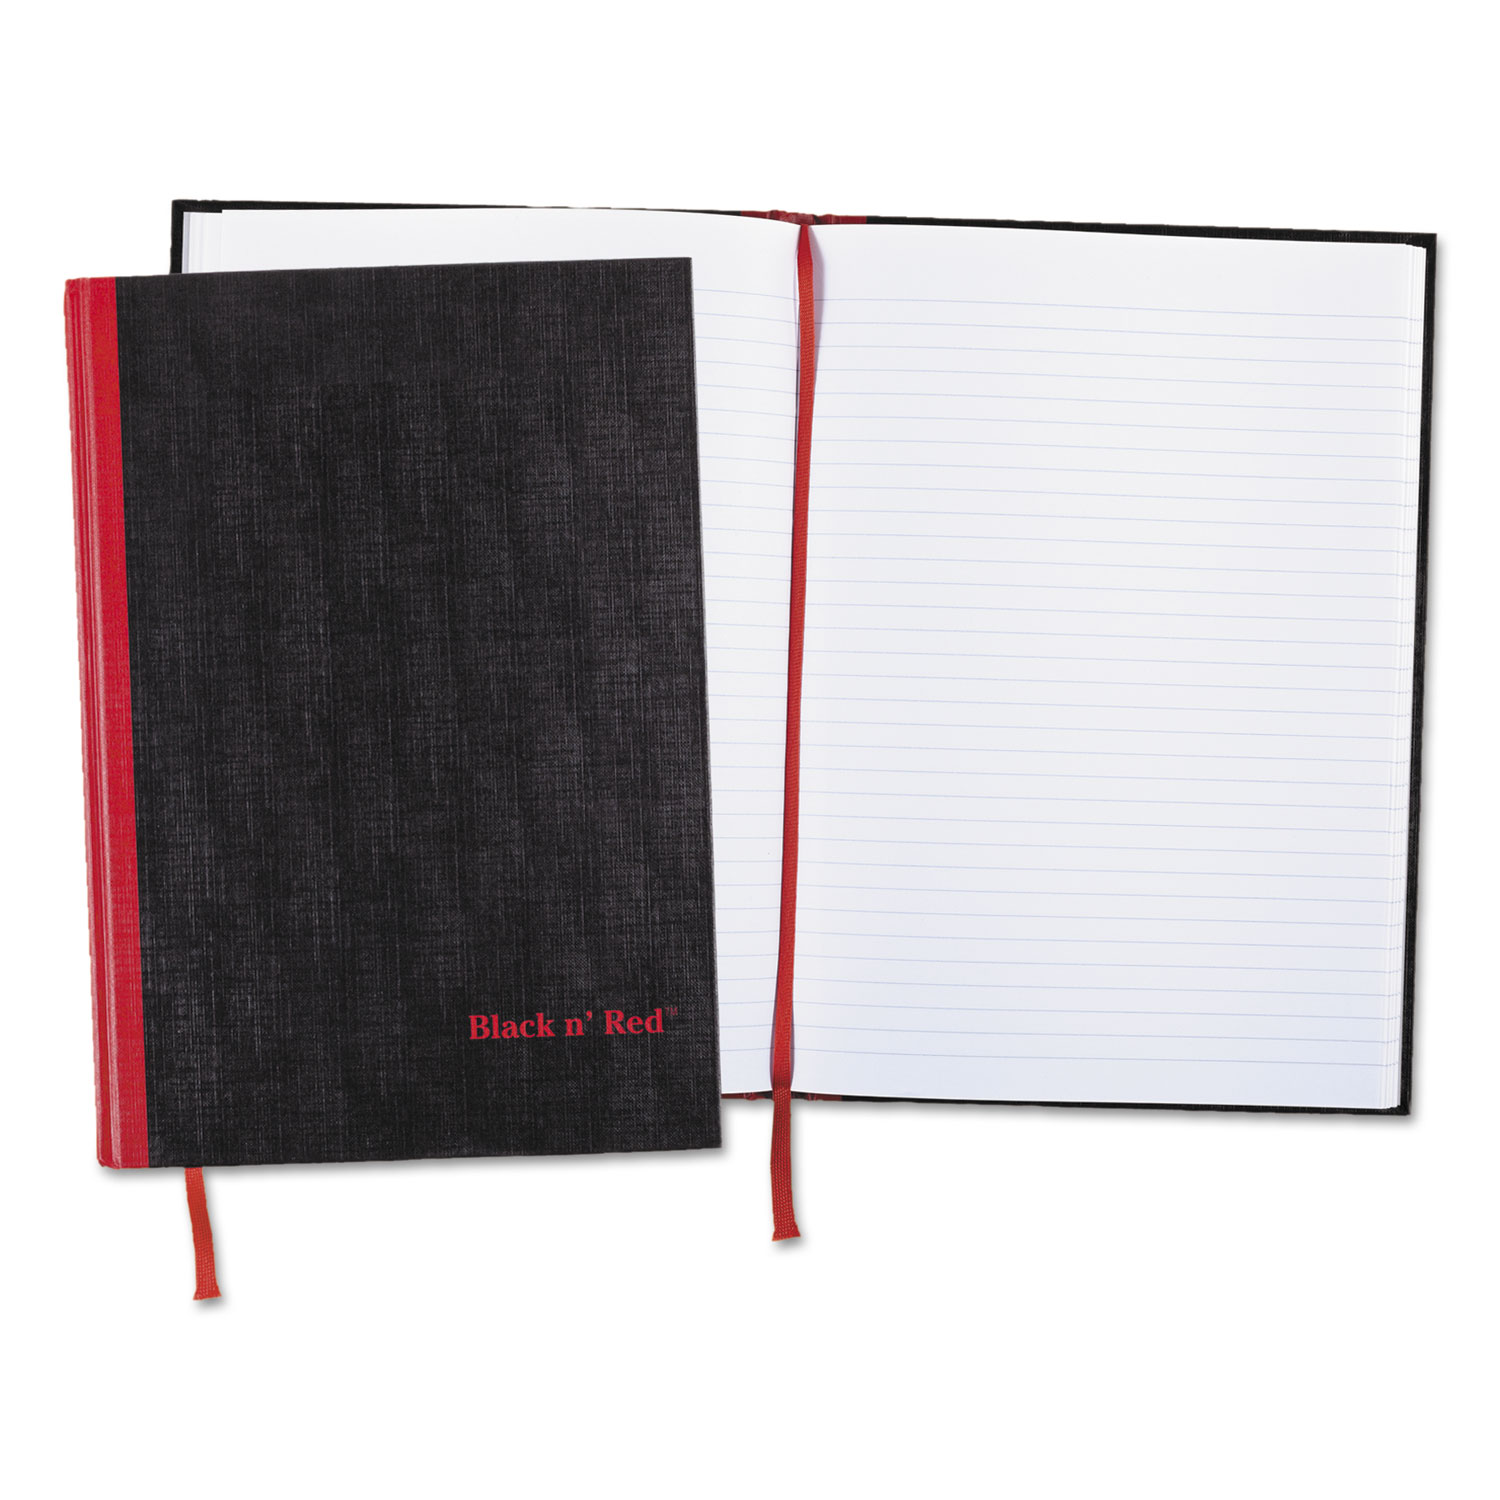  Black n' Red 67012 Casebound Notebook Plus Pack, Medium/College Rule, Black, 11.75 x 8.25, 96 Sheets, 2/Pack (JDK67012) 